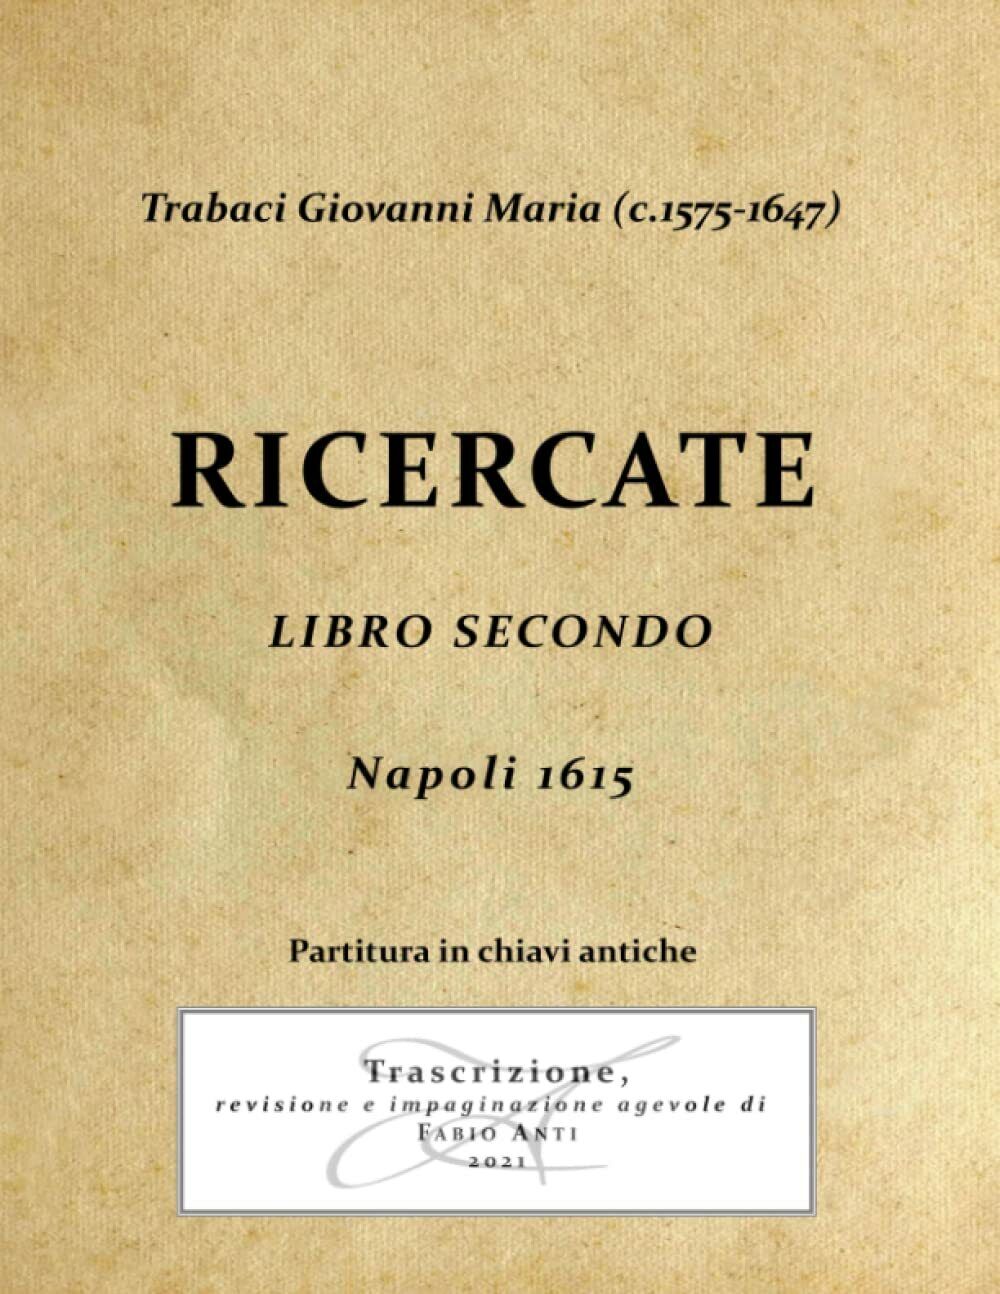 Trabaci Giovanni Maria (c1575-1647) Ricercate Libro Secondo - Napoli 1615 Chiavi